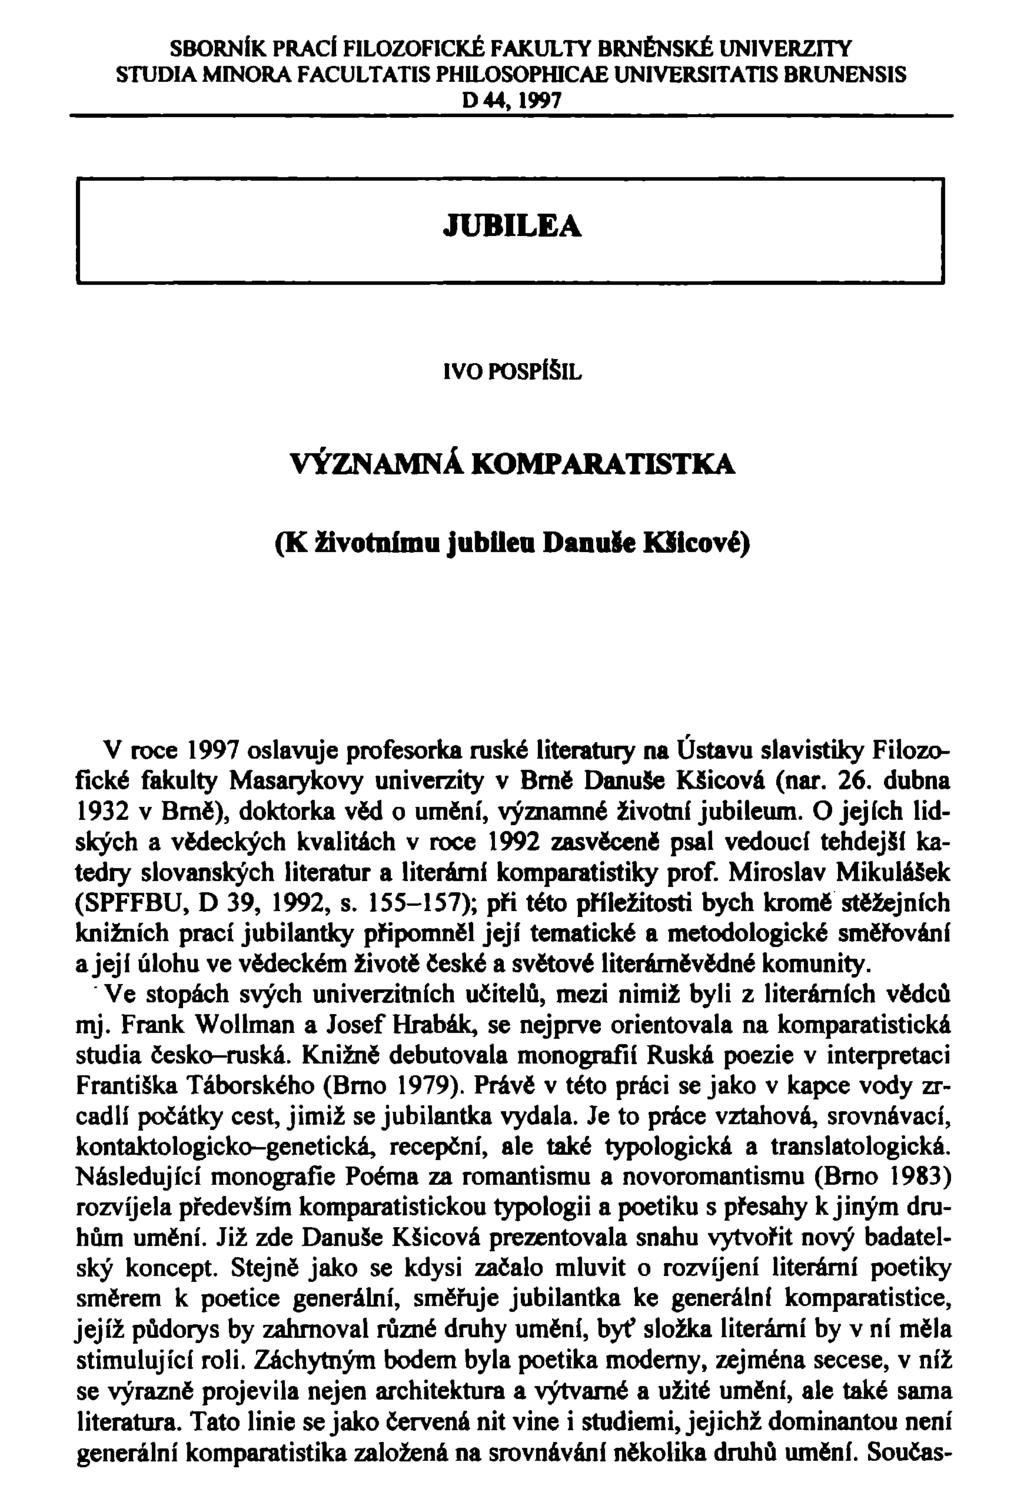 SBORNÍK PRACÍ FILOZOFICKÉ FAKULTY BRNĚNSKÉ UNIVERZITY STUDIA MINORA FACULTATIS PHILOSOPHICAE UNIVERSITATIS BRUNENSIS D44,1997 JUBILEA IVO POSPÍŠIL VÝZNAMNÁ KOMPARATISTKA (K životnímu jubilea DanuSe